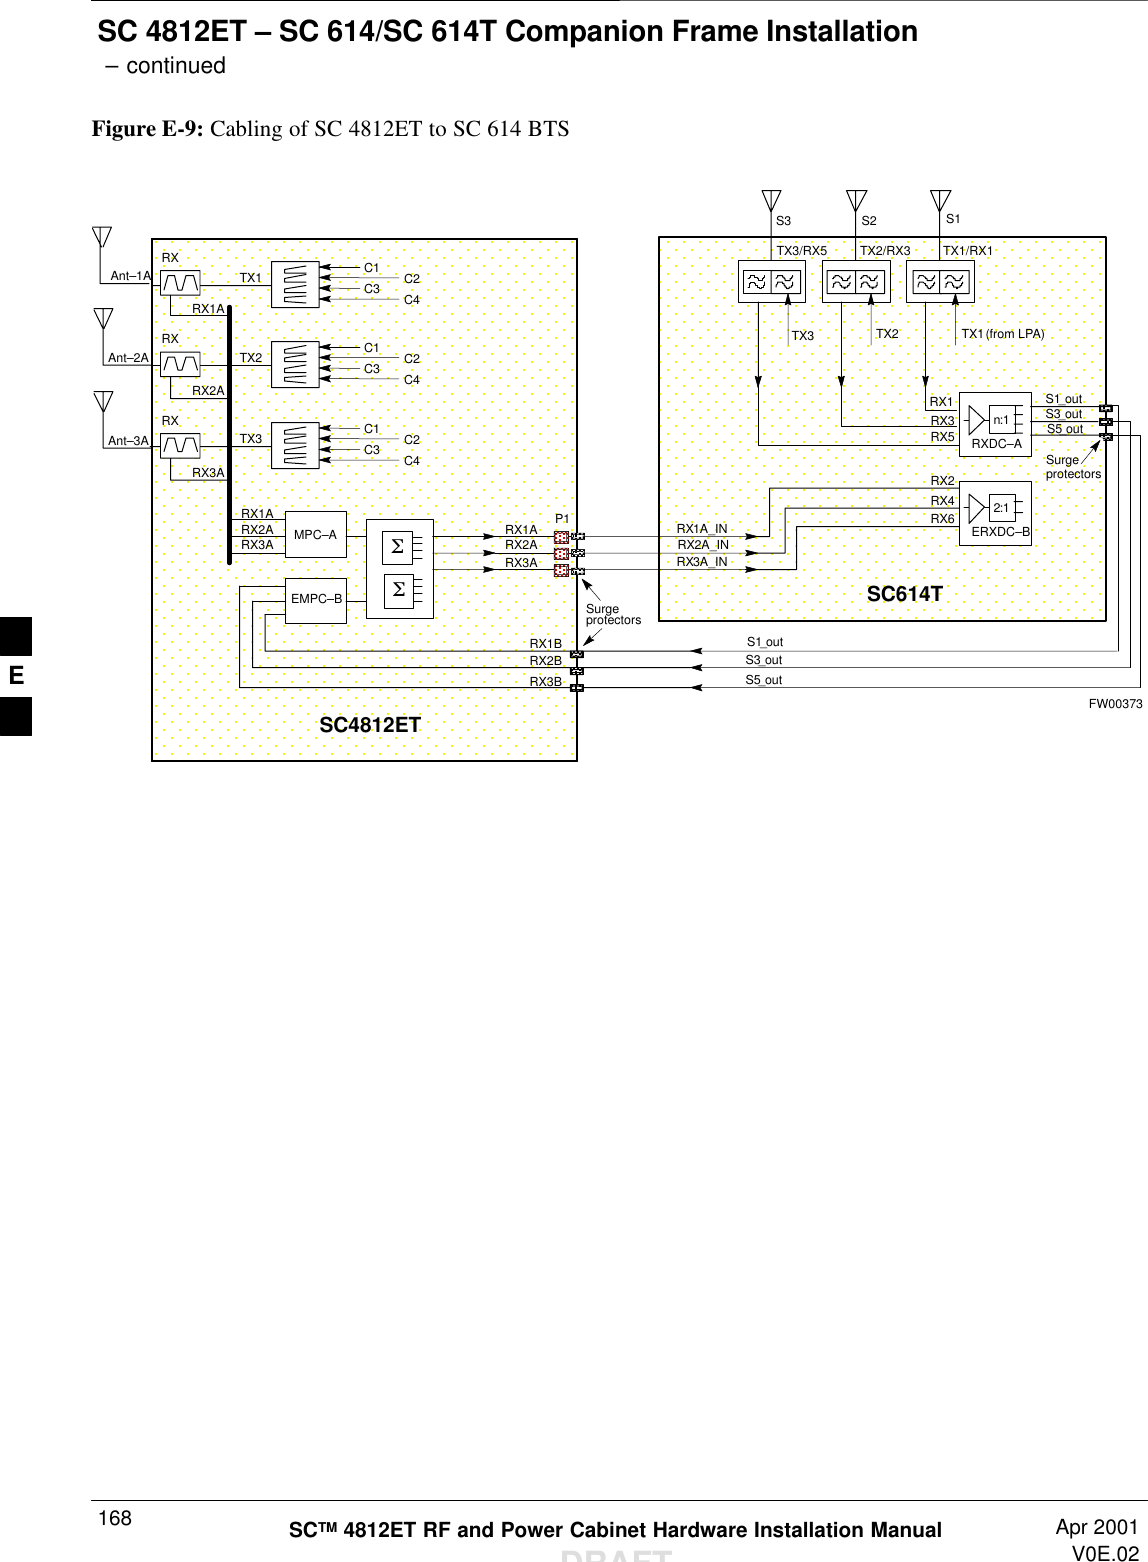 SC 4812ET – SC 614/SC 614T Companion Frame Installation – continuedSCTM 4812ET RF and Power Cabinet Hardware Installation ManualDRAFTApr 2001V0E.02168Figure E-9: Cabling of SC 4812ET to SC 614 BTSSC4812ETC1 C2C3 C4RXTX1SSRXTX2RXTX3MPC–AEMPC–BRX1ARX2ARX3ASC614TRX1ARX3ATX1 (from LPA)TX2TX3RX2ARX1ARX2ARX3ASurgeprotectorsP1RXDC–An:1ERXDC–B2:1RX1A_INSurgeprotectorsS1_outTX1/RX1TX2/RX3TX3/RX5RX5RX3RX1RX2RX4RX6Ant–1ARX2A_INRX3A_INS3_outS5_outRX1BRX2BRX3BS1_outS3_outS5_outAnt–2AAnt–3AS1S2S3C1 C2C3 C4C1 C2C3 C4FW00373E